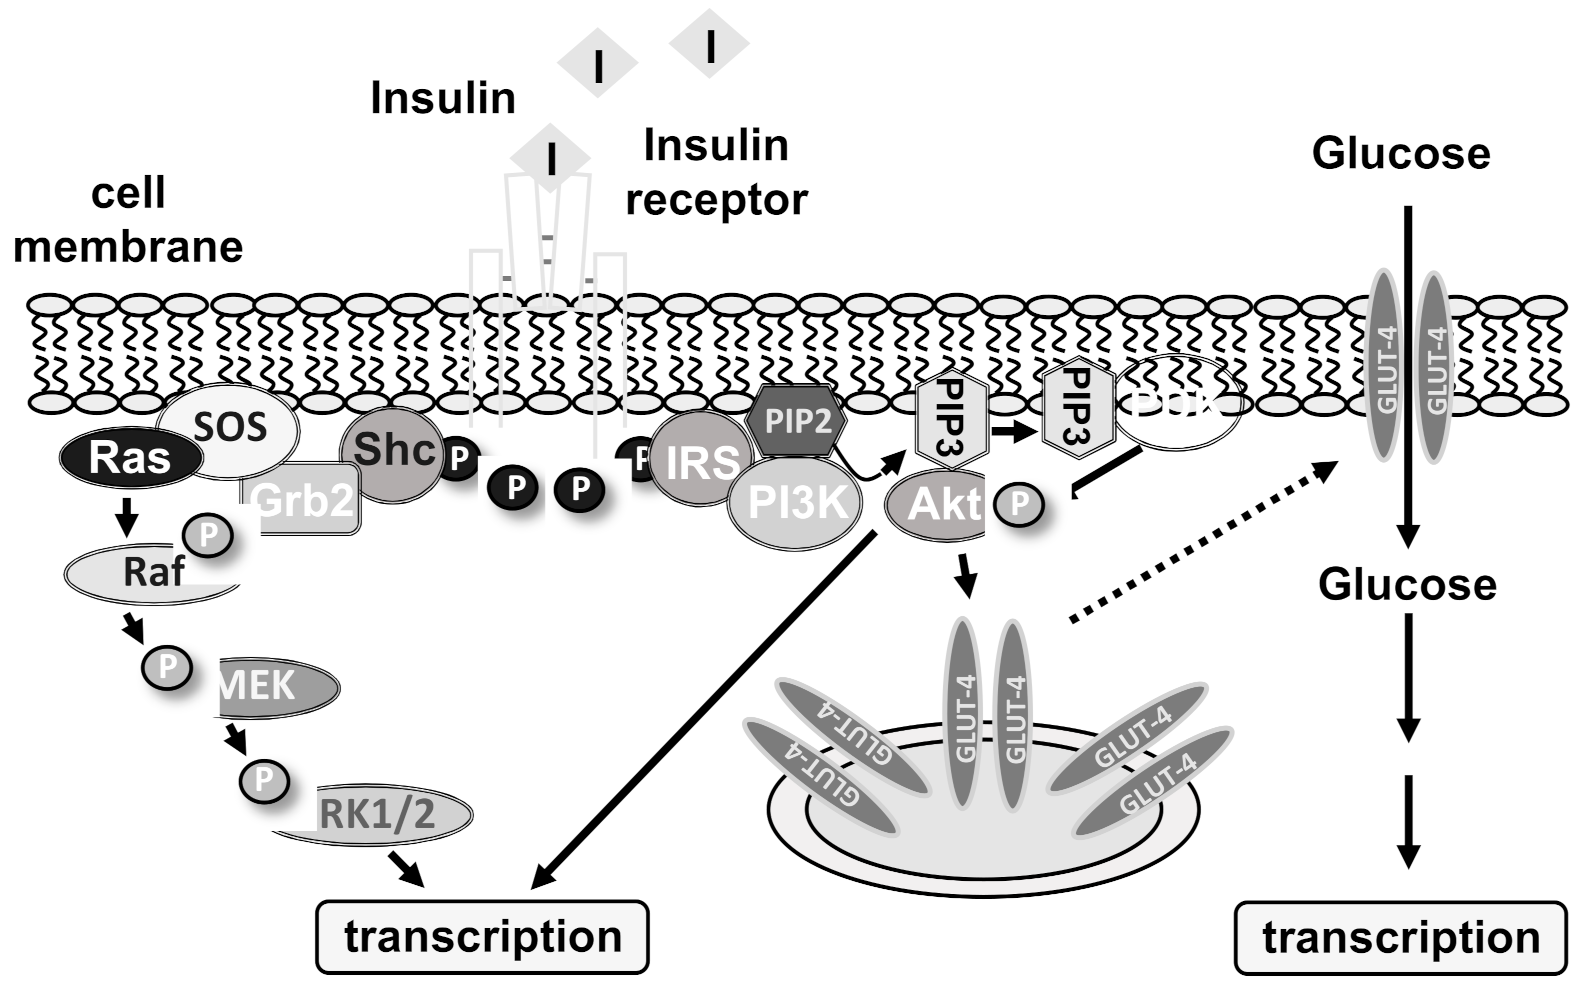 what type of biomolecule is insulin